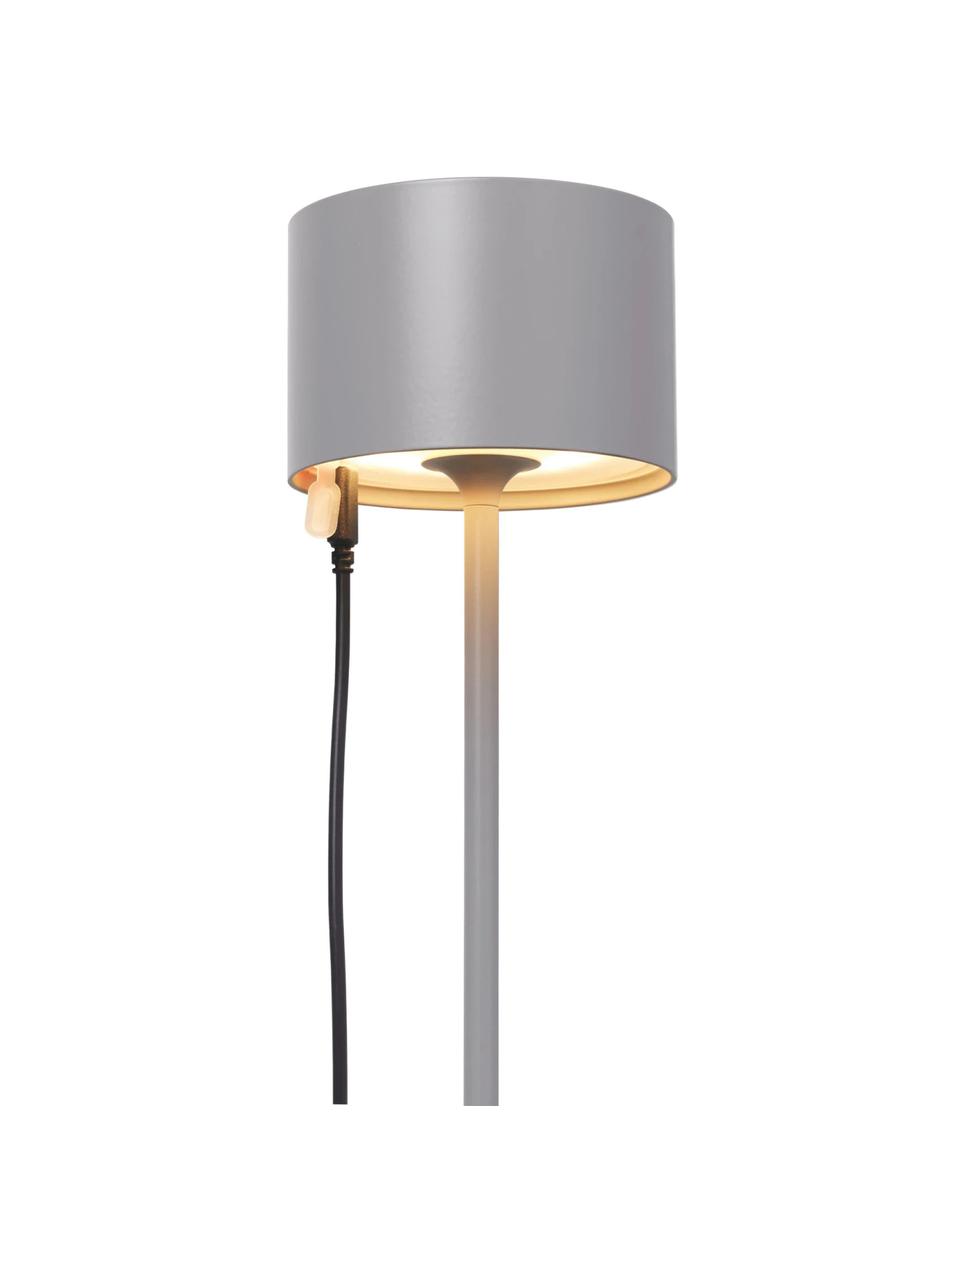 Lampada da tavolo portatile da esterno a LED Farol, Lampada: alluminio verniciato a po, Grigio, Ø 11 x Alt. 34 cm